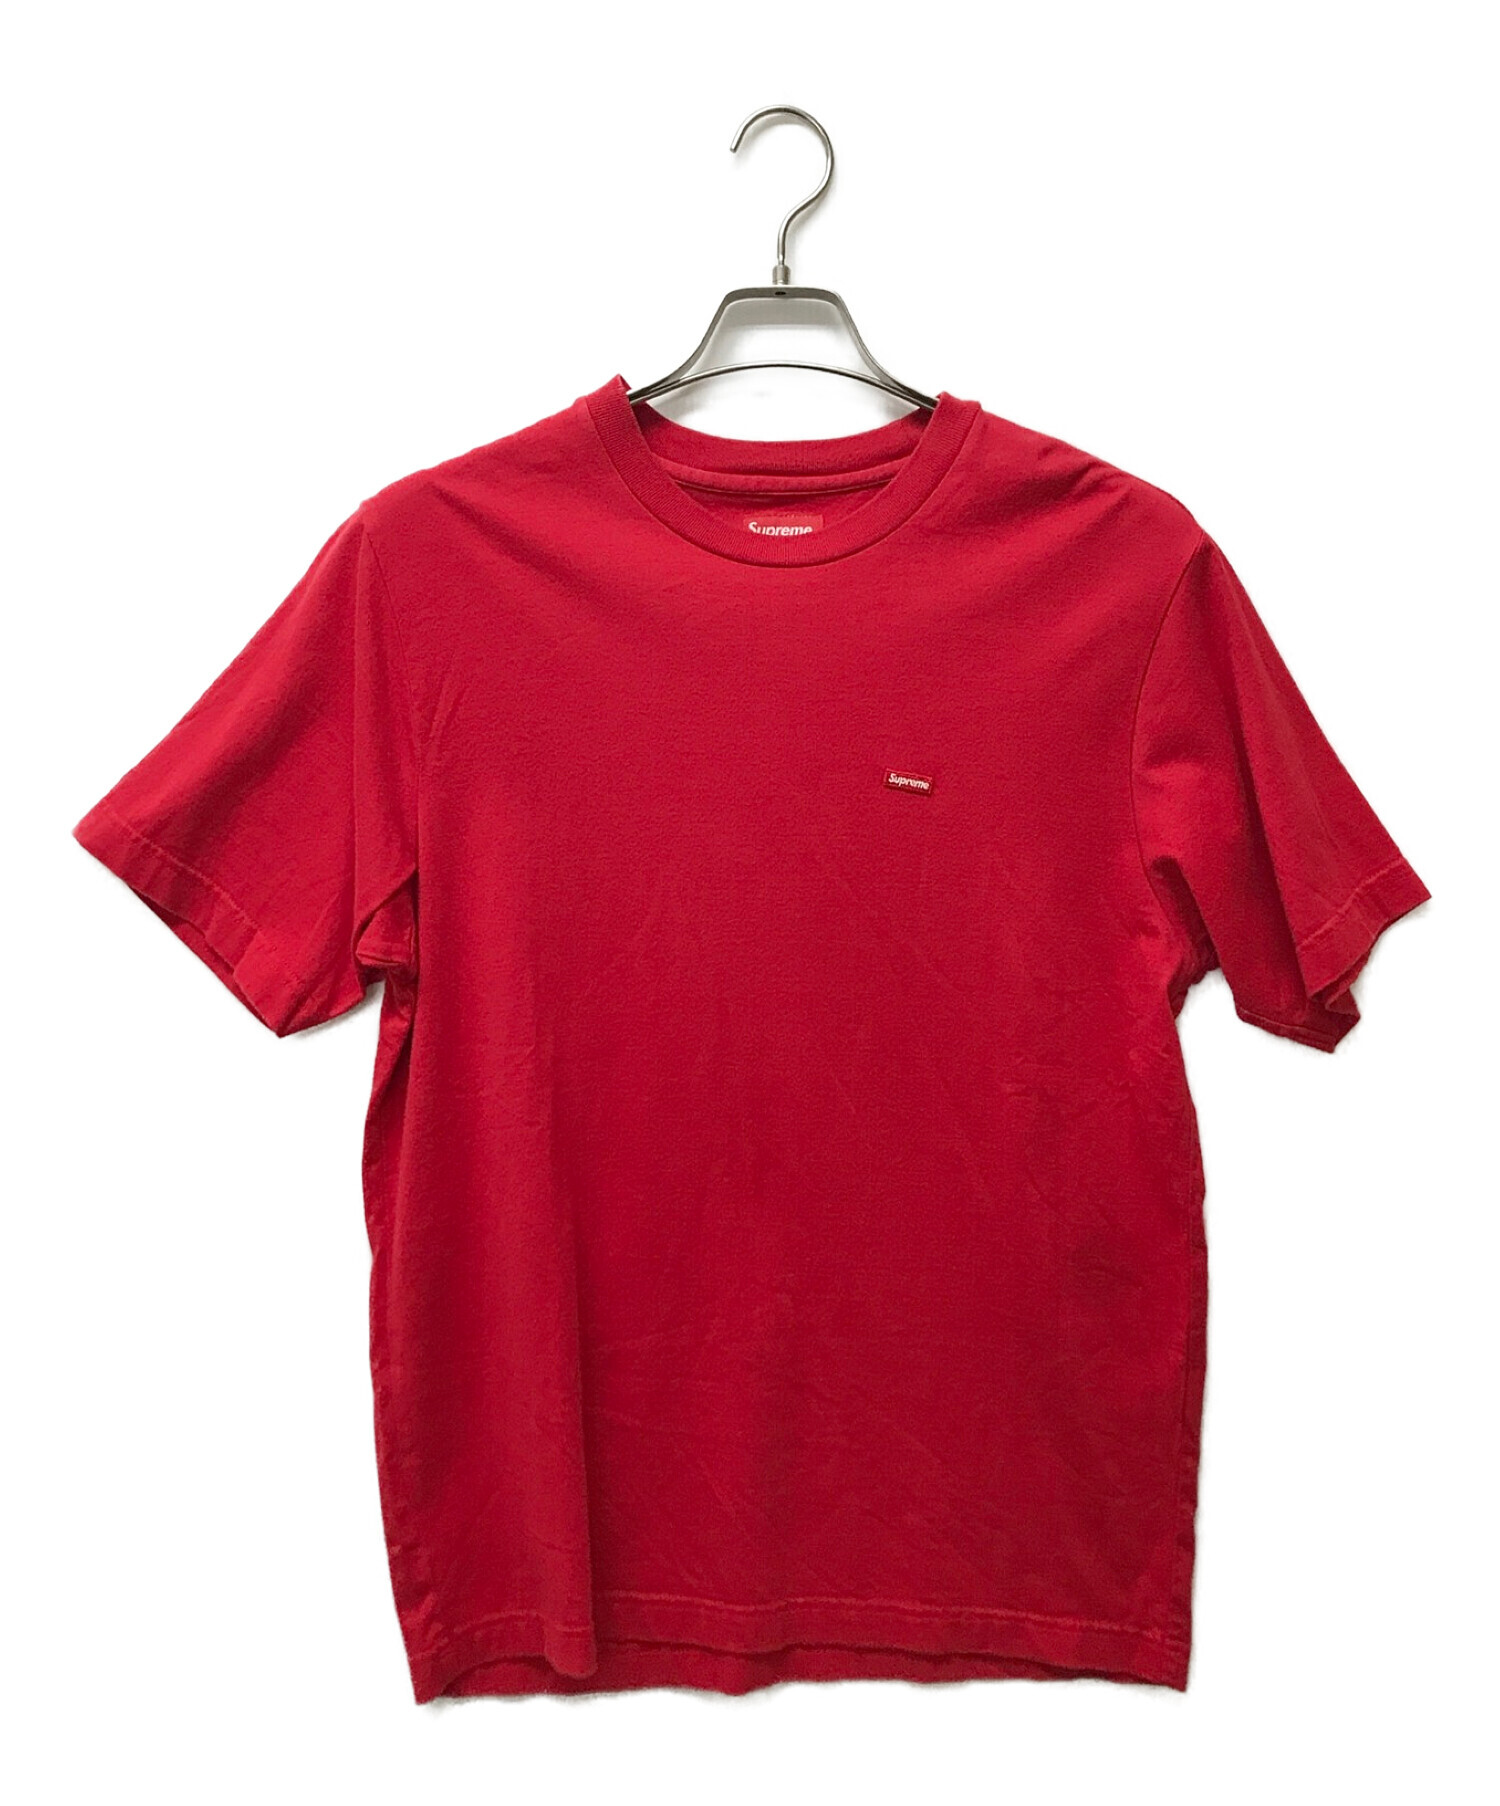 Tシャツ/カットソー(半袖/袖なし)Supreme Small Box Tee Sサイズ